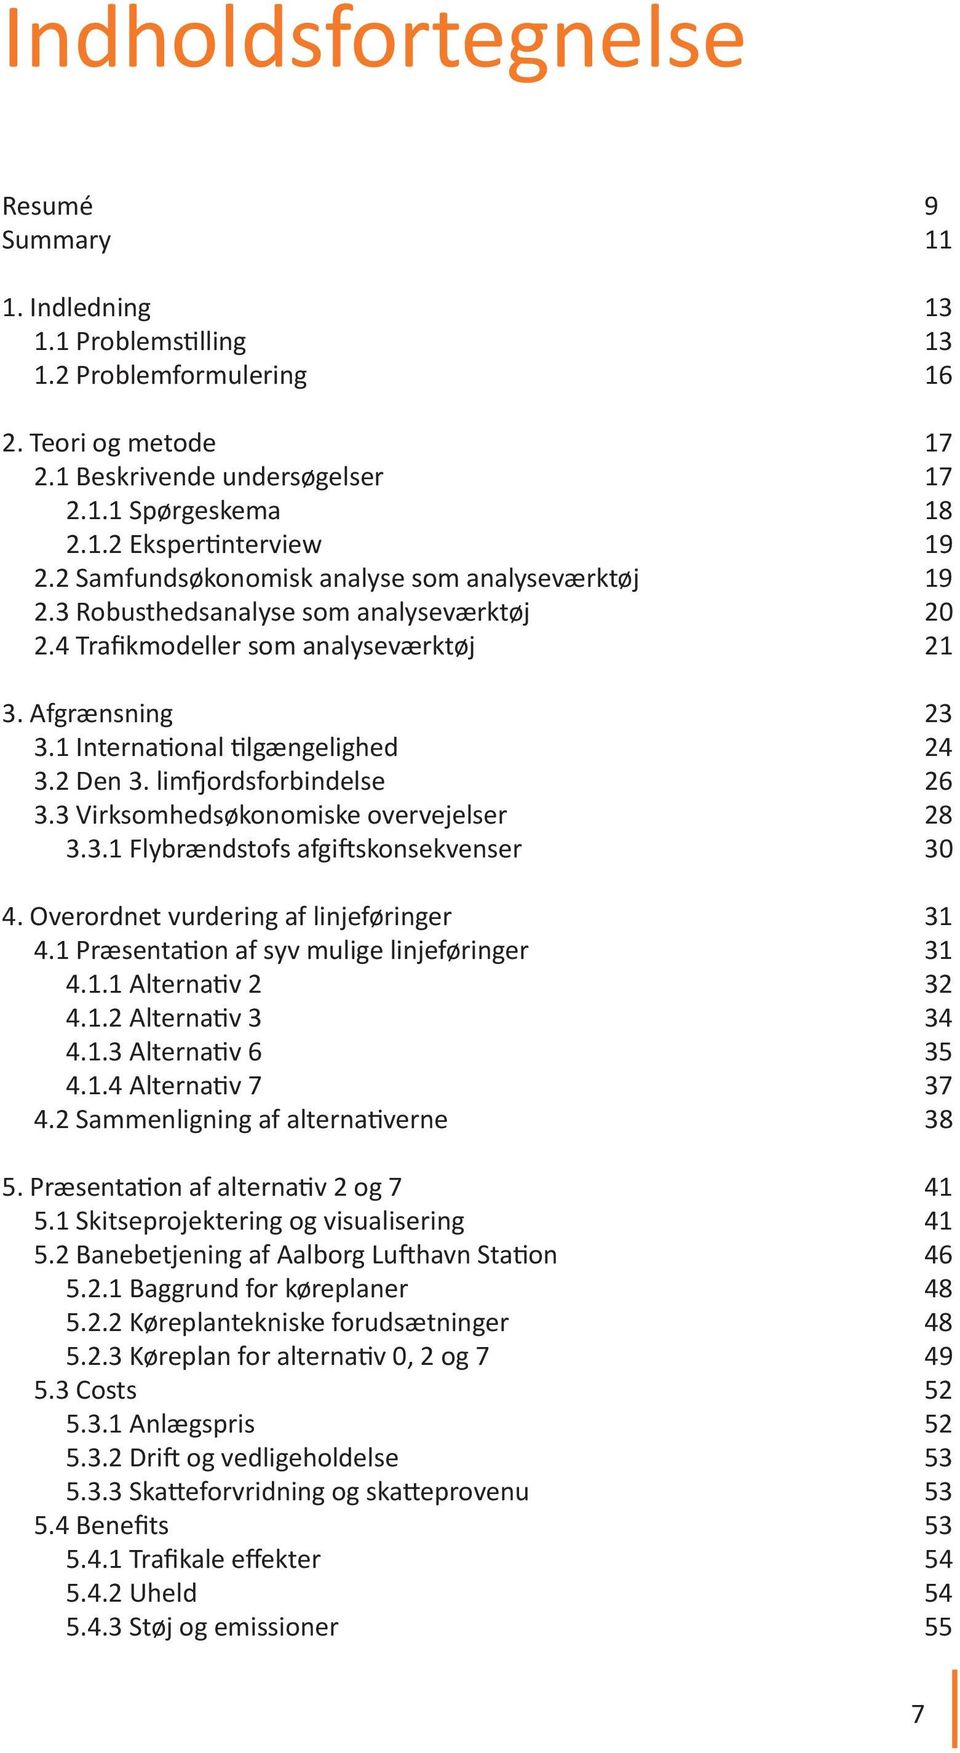 limfjordsforbindelse 26 3.3 Virksomhedsøkonomiske overvejelser 28 3.3.1 Flybrændstofs afgiftskonsekvenser 30 4. Overordnet vurdering af linjeføringer 31 4.